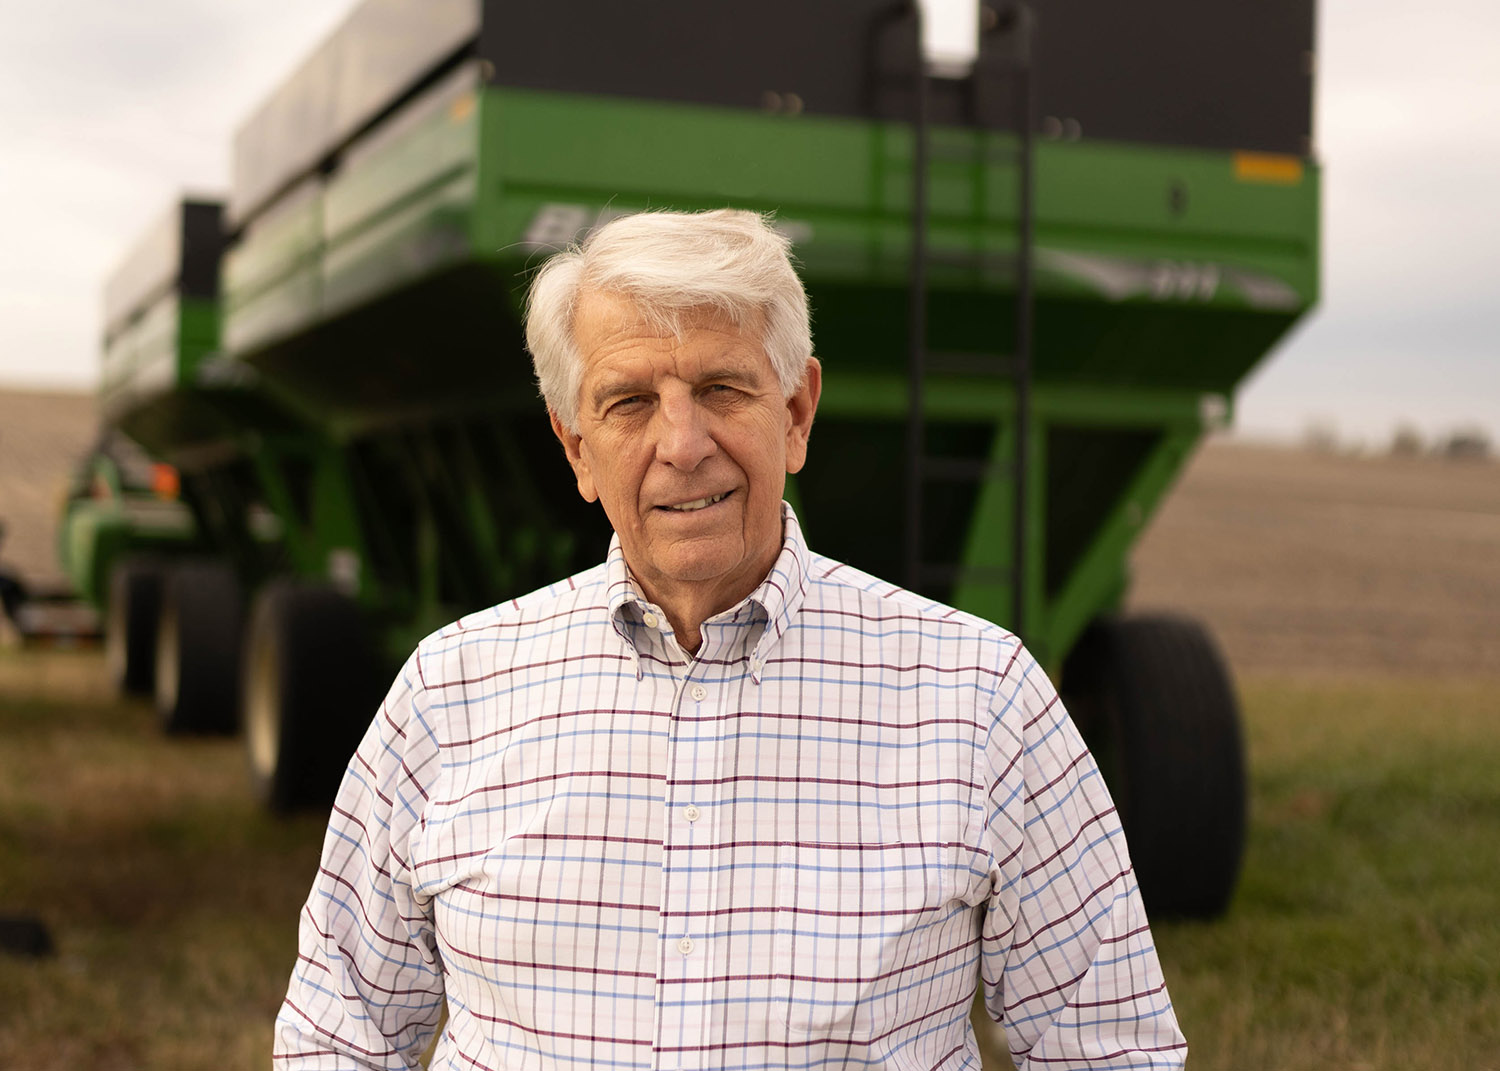 Farmer standing near grain wagons in field